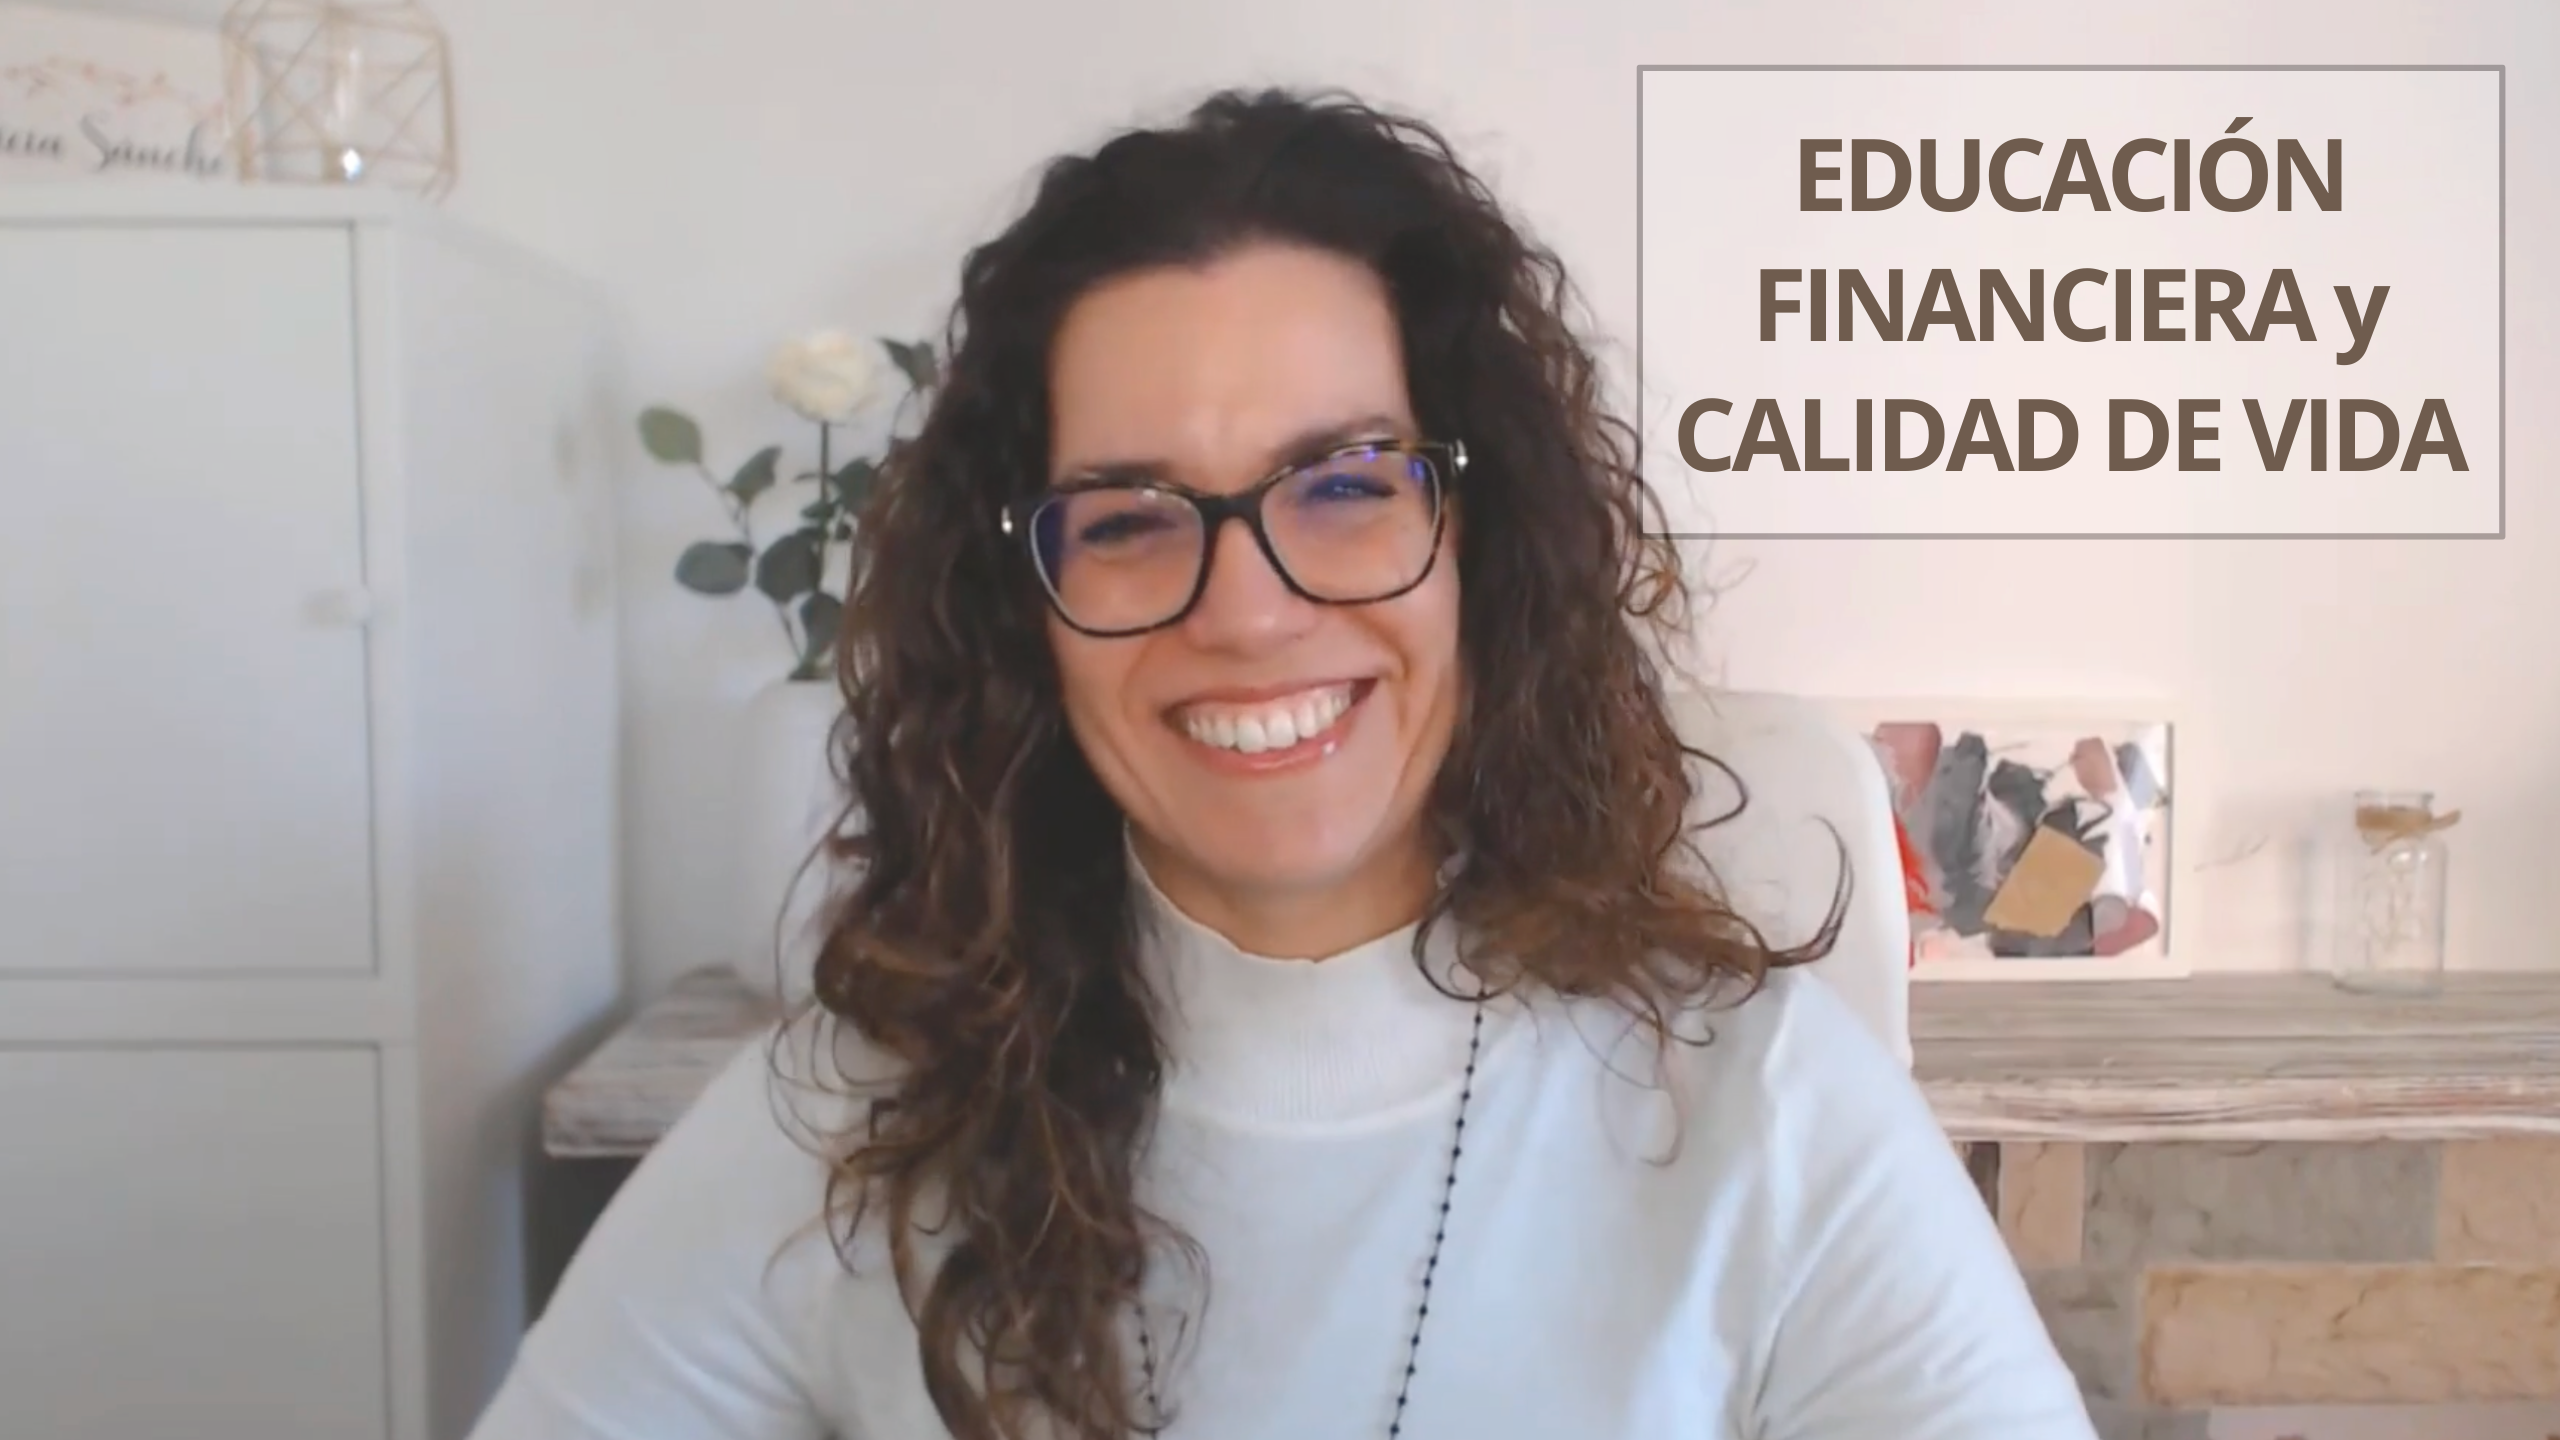 Patricia Sanchez Psicología - Podcast Vivir Tranquila - Educación Financiera y calidad de vida